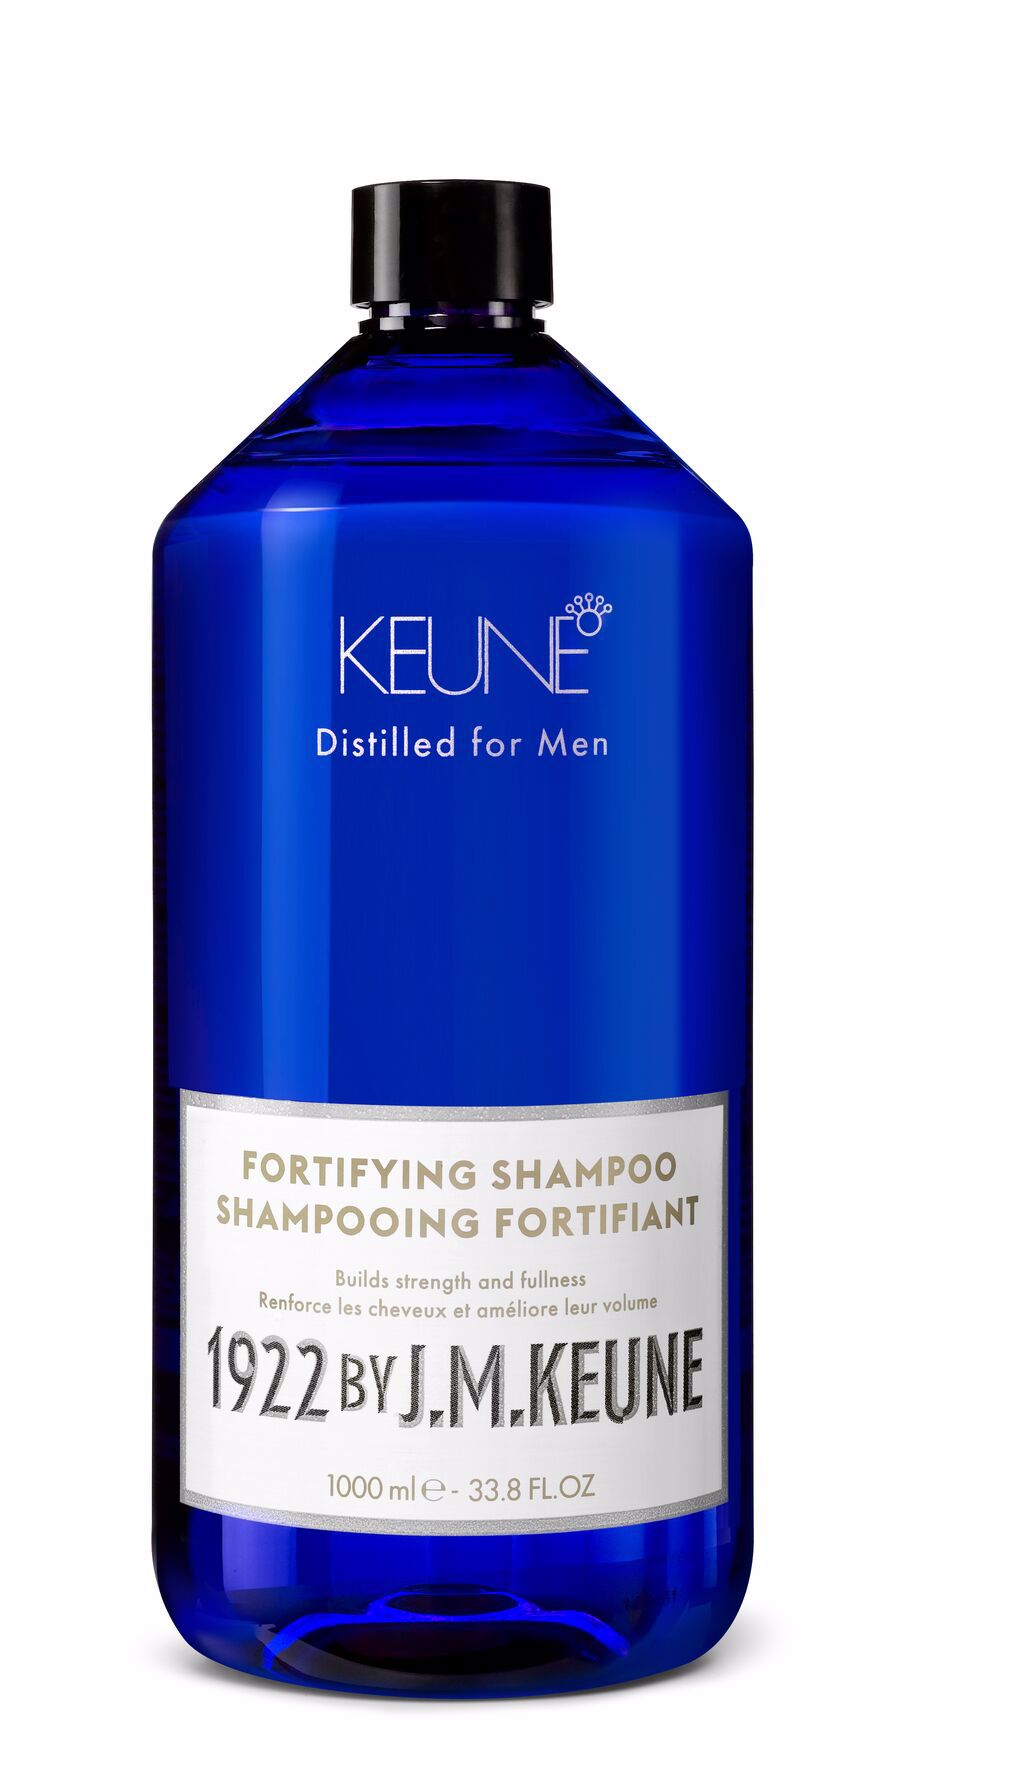 Souffrez-vous de la perte de cheveux? Notre shampooing pour hommes avec de la vitamine H et de l'eucalyptus vous offre des cheveux forts. Plus de volume, des cheveux plus sains. Keune.ch.